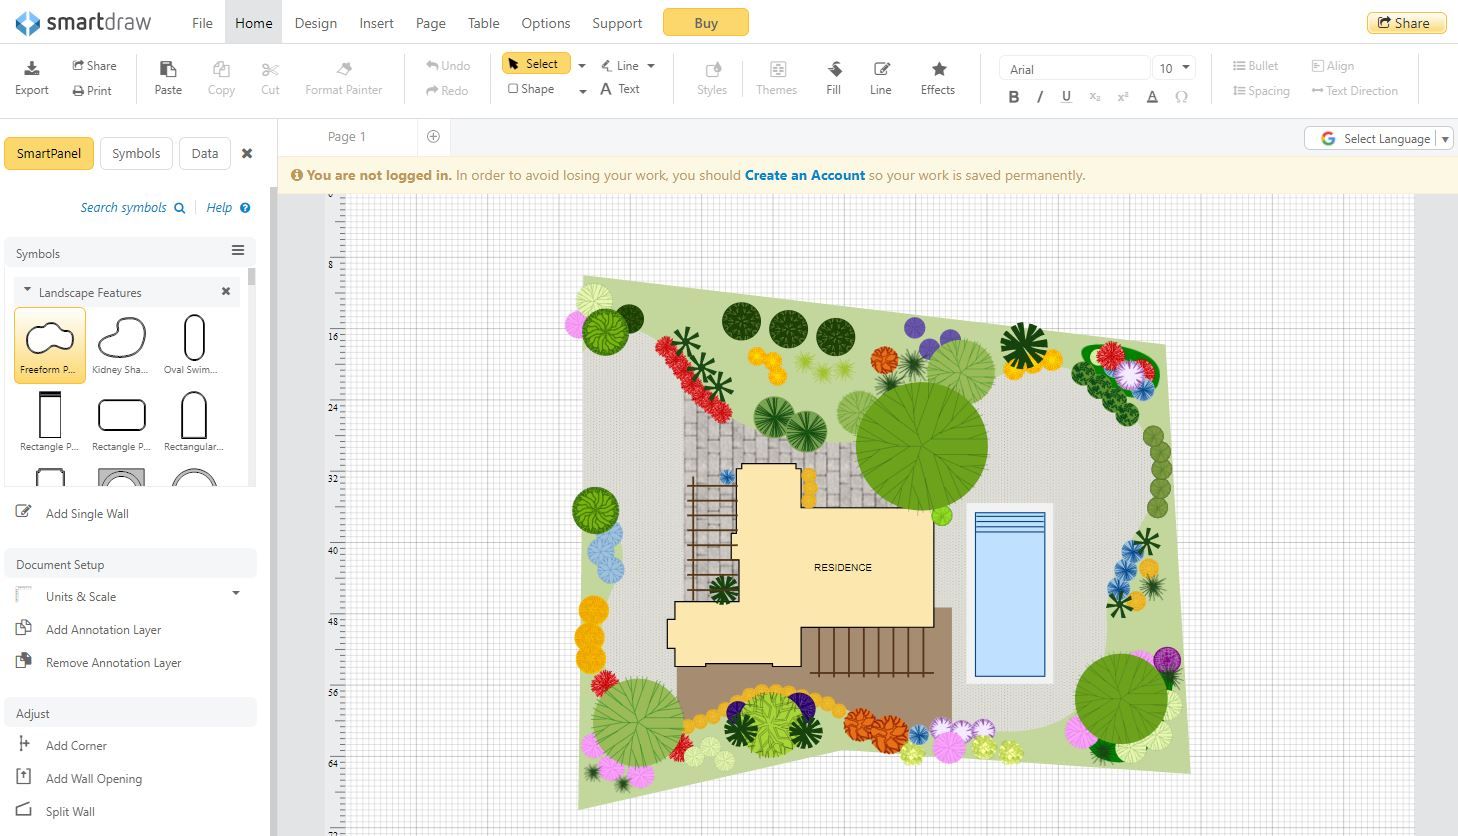 Die 9 besten kostenlosen Online-Tools für die Landschafts- und Gartengestaltung - smartdraw landscape design